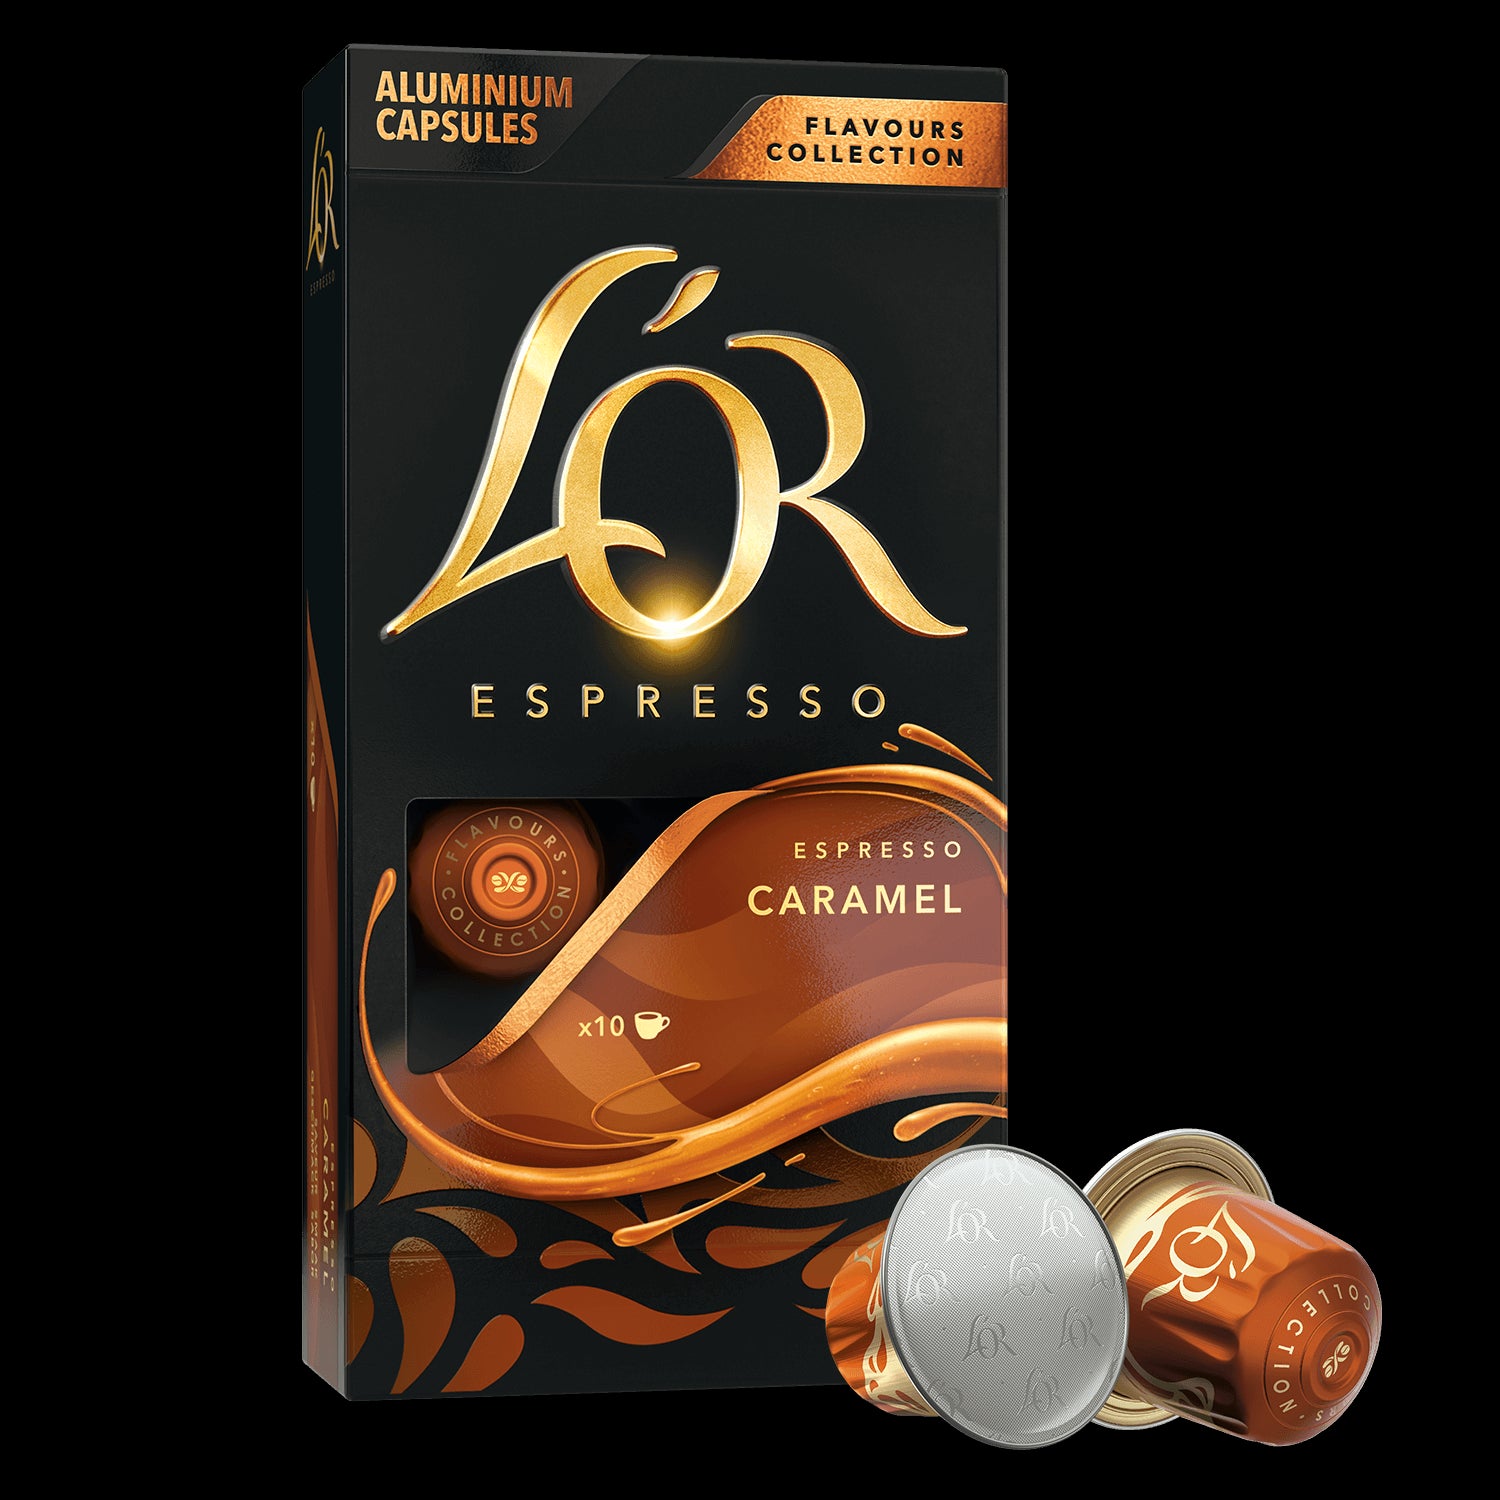 Image of Caramel Espresso box.